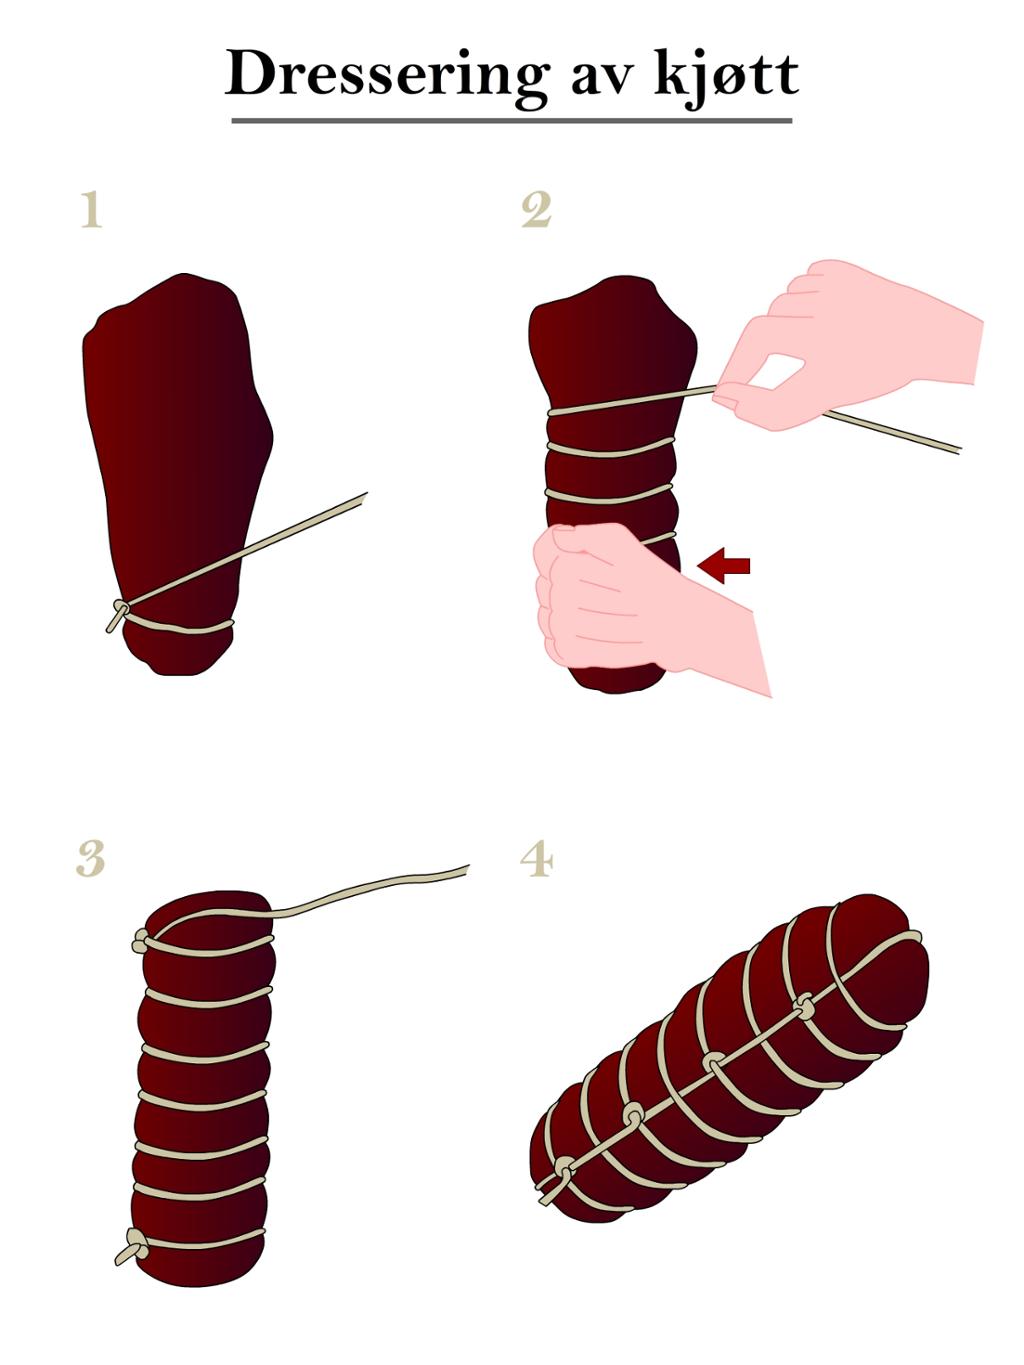 Dressering av kjøtt